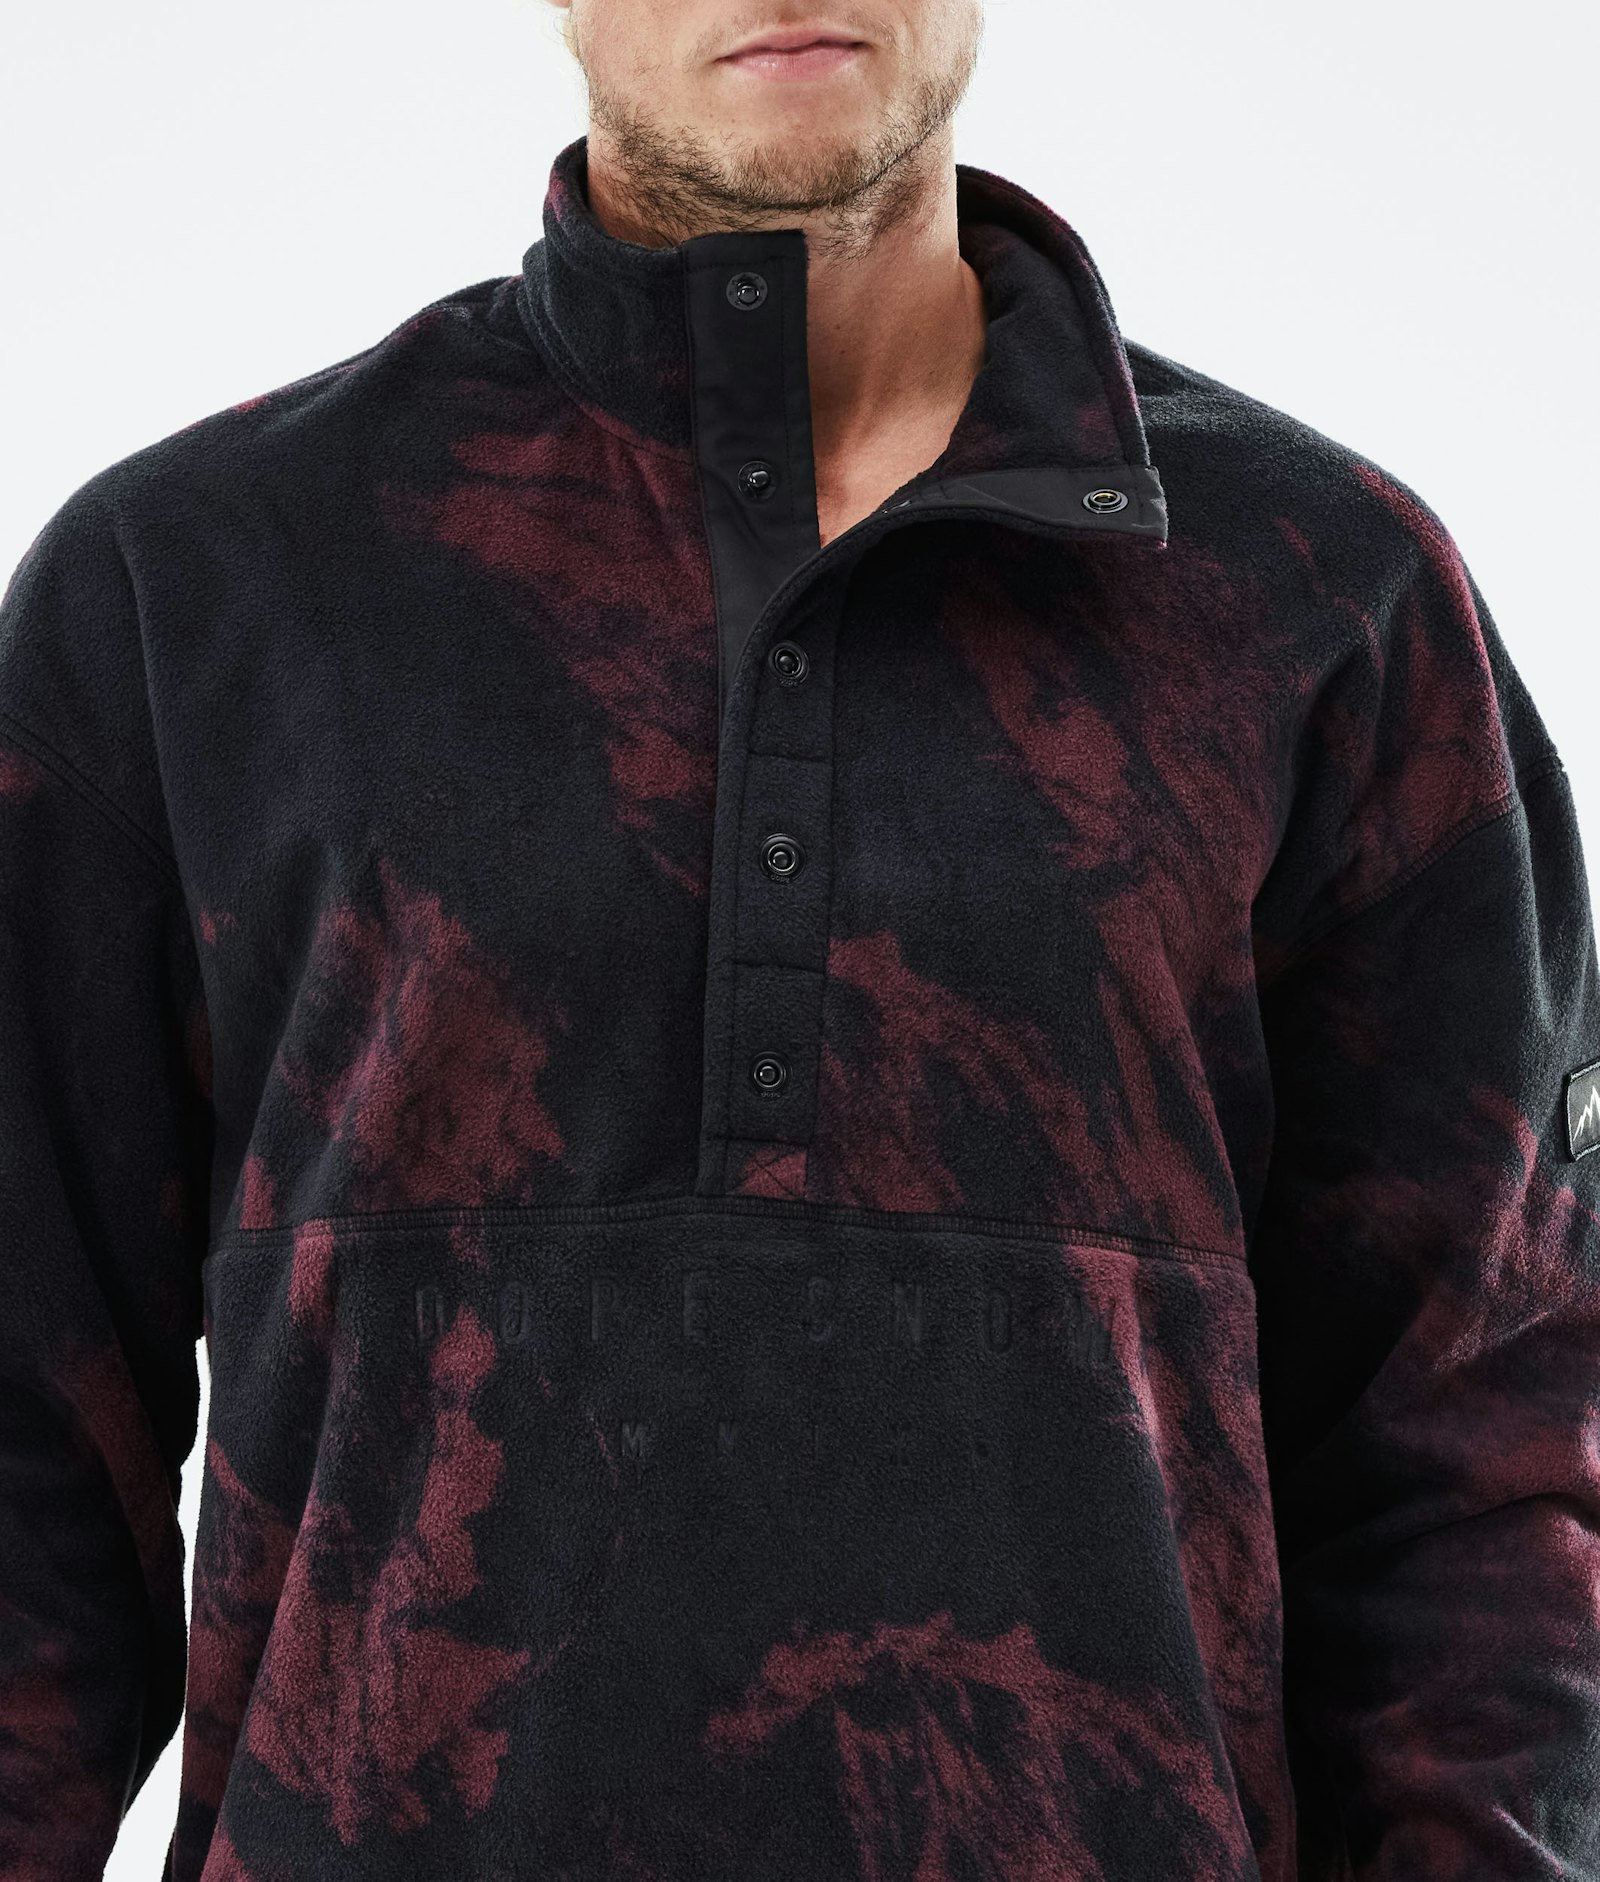 Dope Comfy 2021 Fleece Sweater Men Paint Burgundy, Image 6 of 6